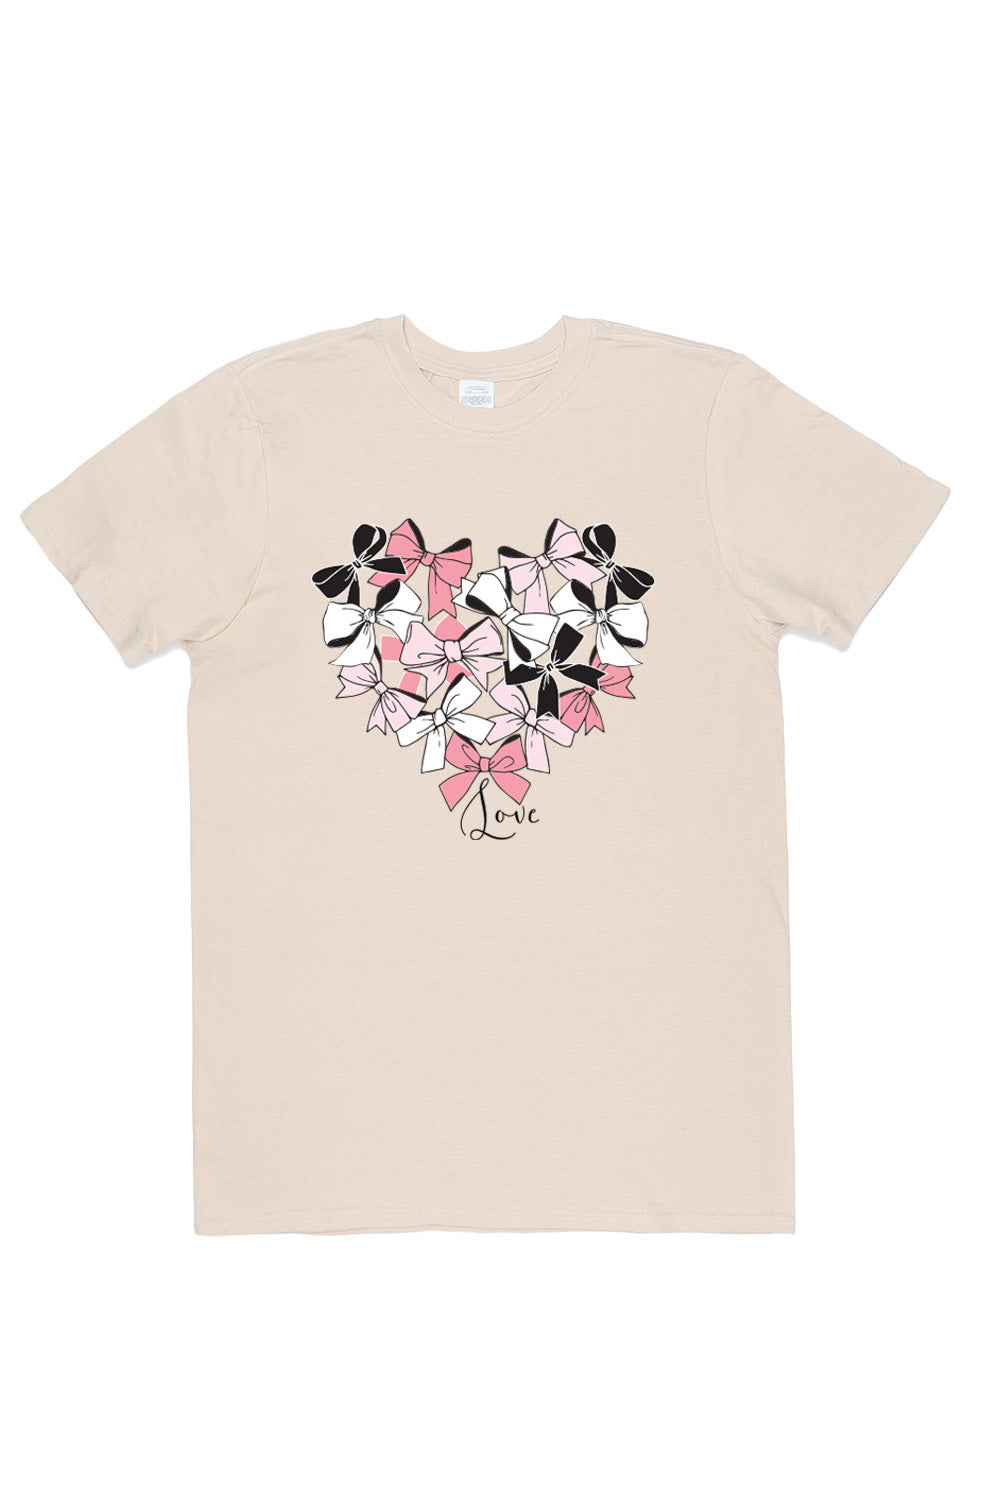 Heart of Bow's T-Shirt in Sand (Custom Packs)